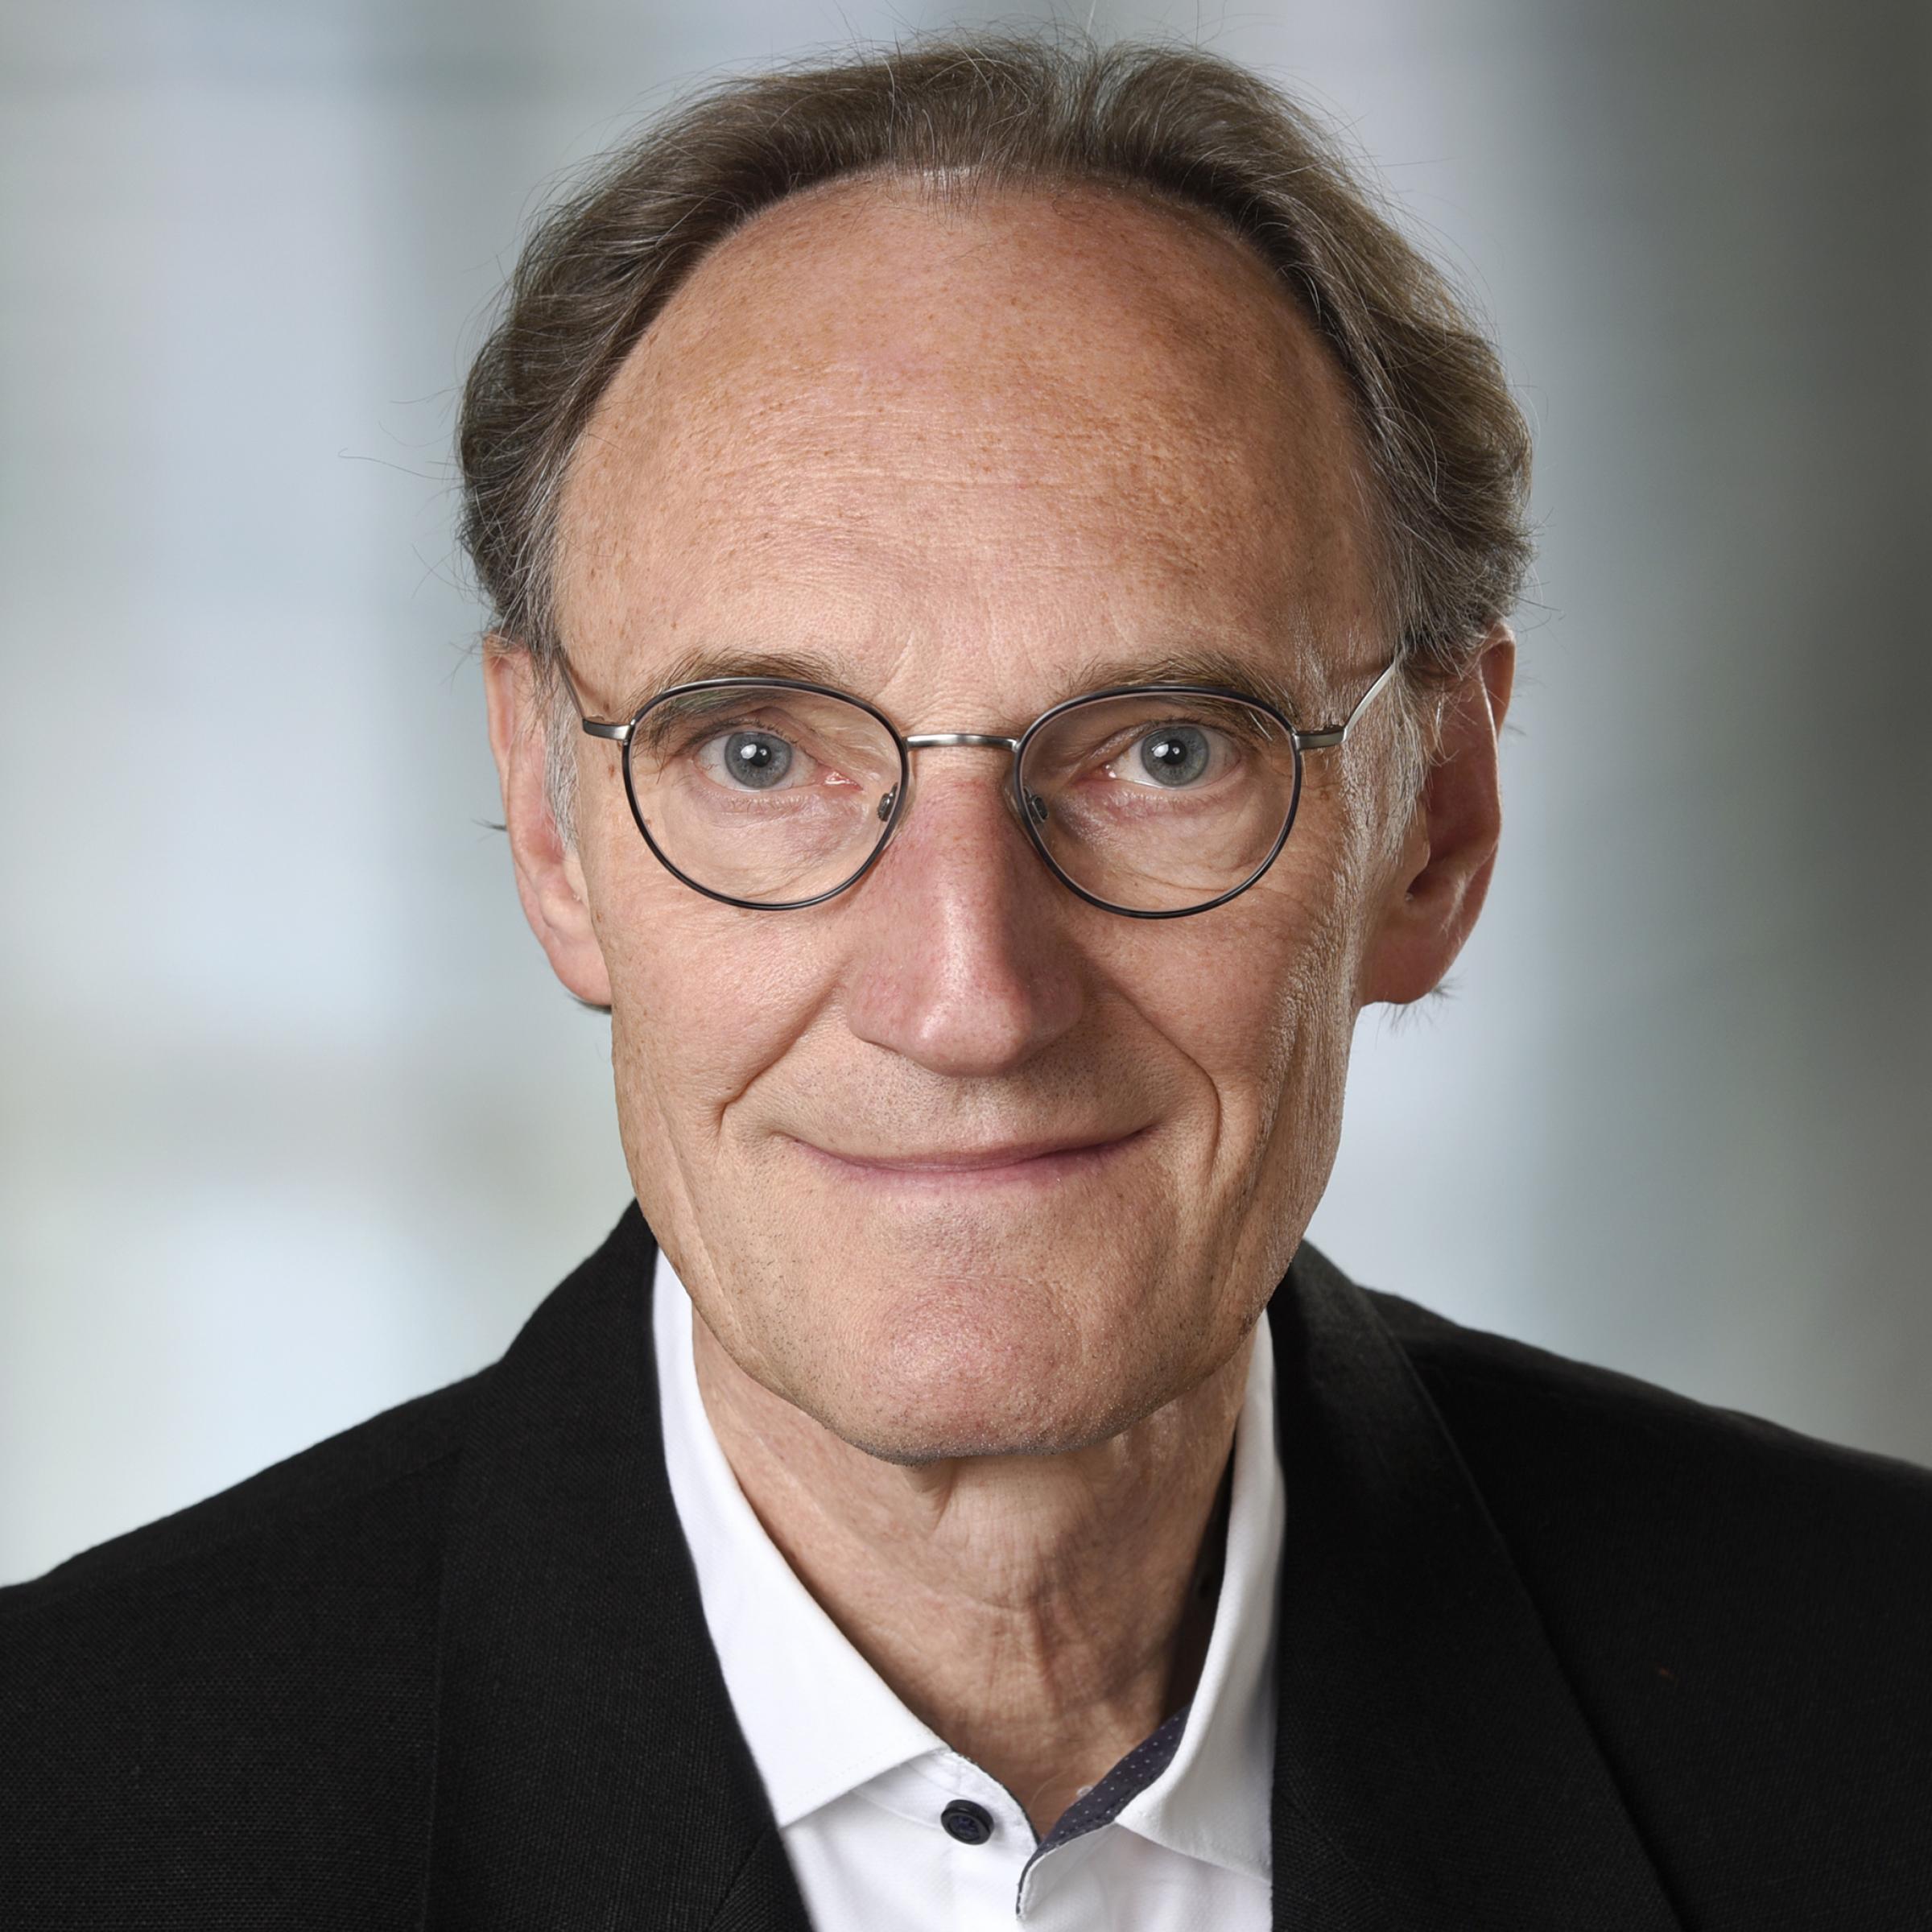 Porträtfoto von Dr. Henning Engeln. Der Wissenschaftsjournalist, Biologe und Buchautor war viele Jahre lang Redakteur bei GEO und ist jetzt Mitglied der Riffreporter eG